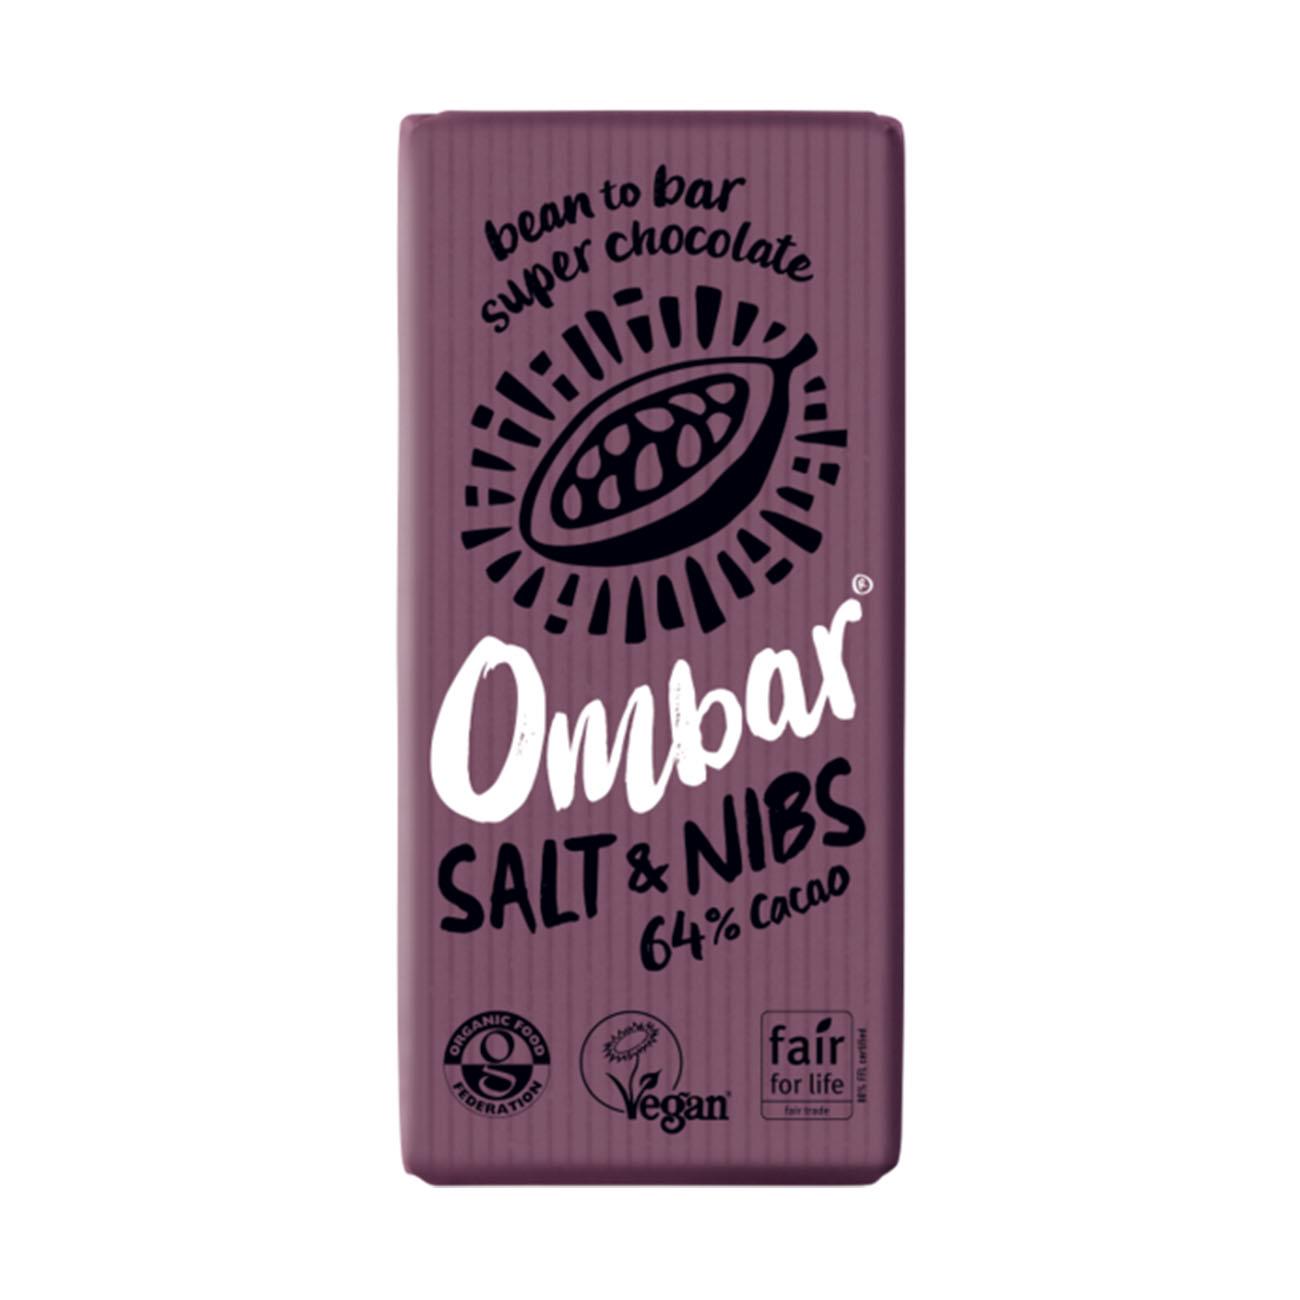 Salt & Nibs 64% cacao Chocolate Bar 70g